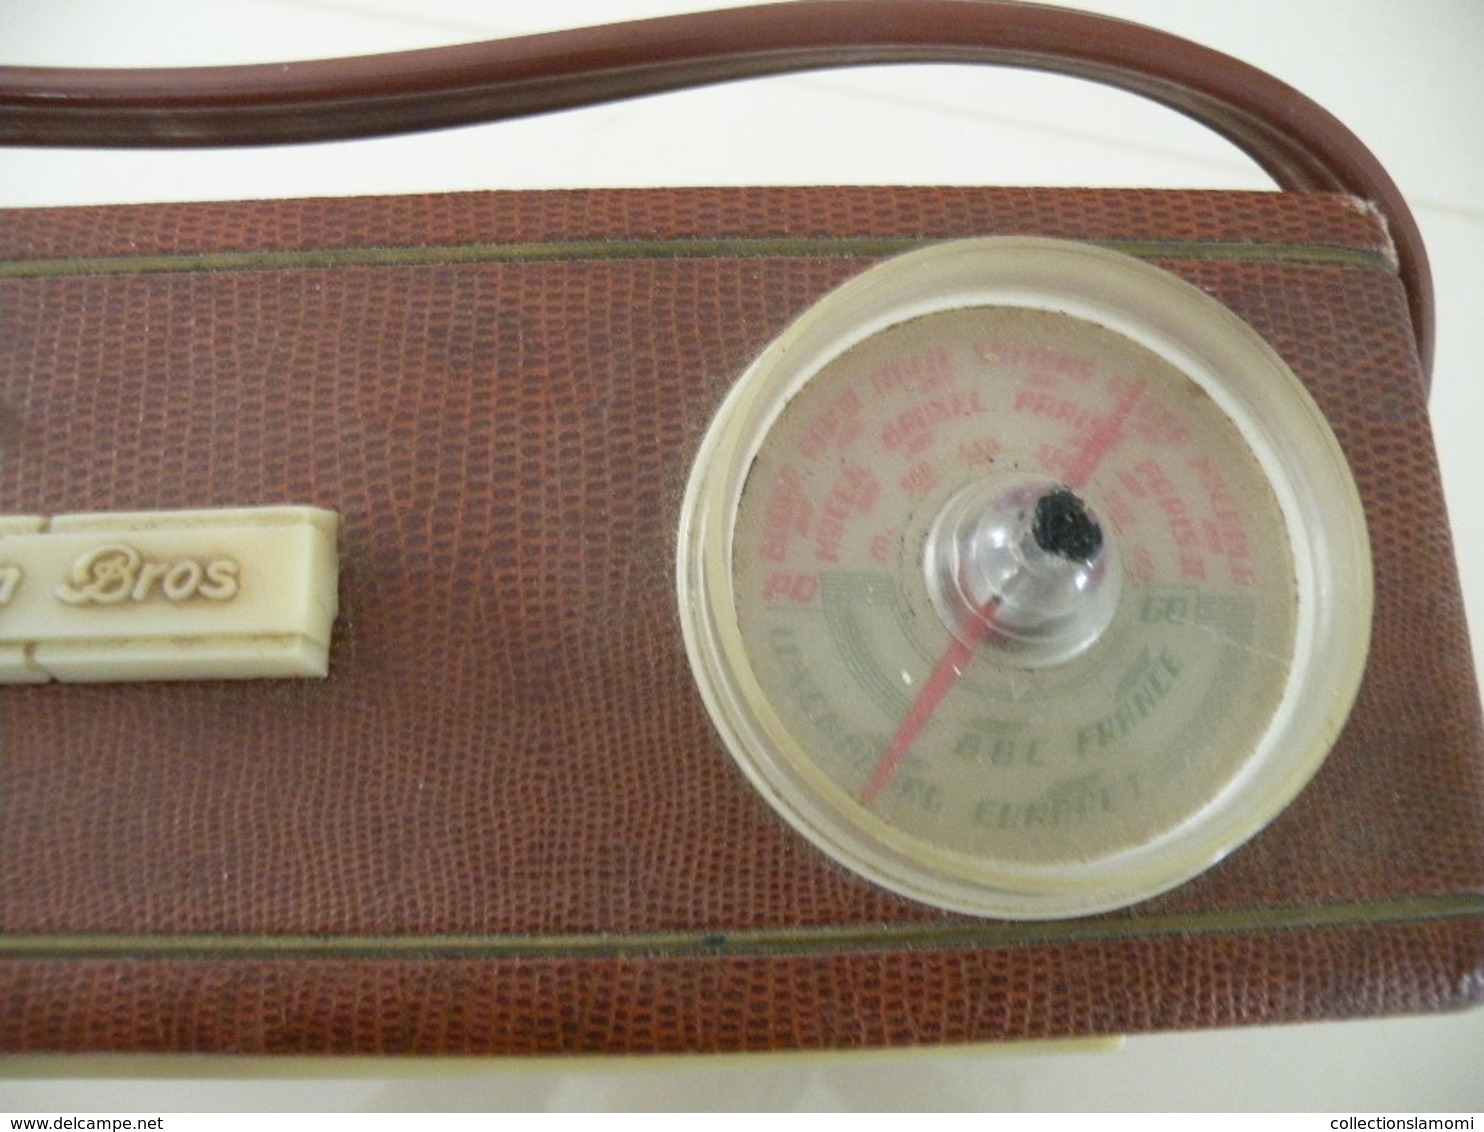 Ancienne Radio Transistor Seven (Pizon Bros) En état De Fonction (0,28cm X 0,11 Cm H 0,21) Avec Son étui En Cuir - Appareils